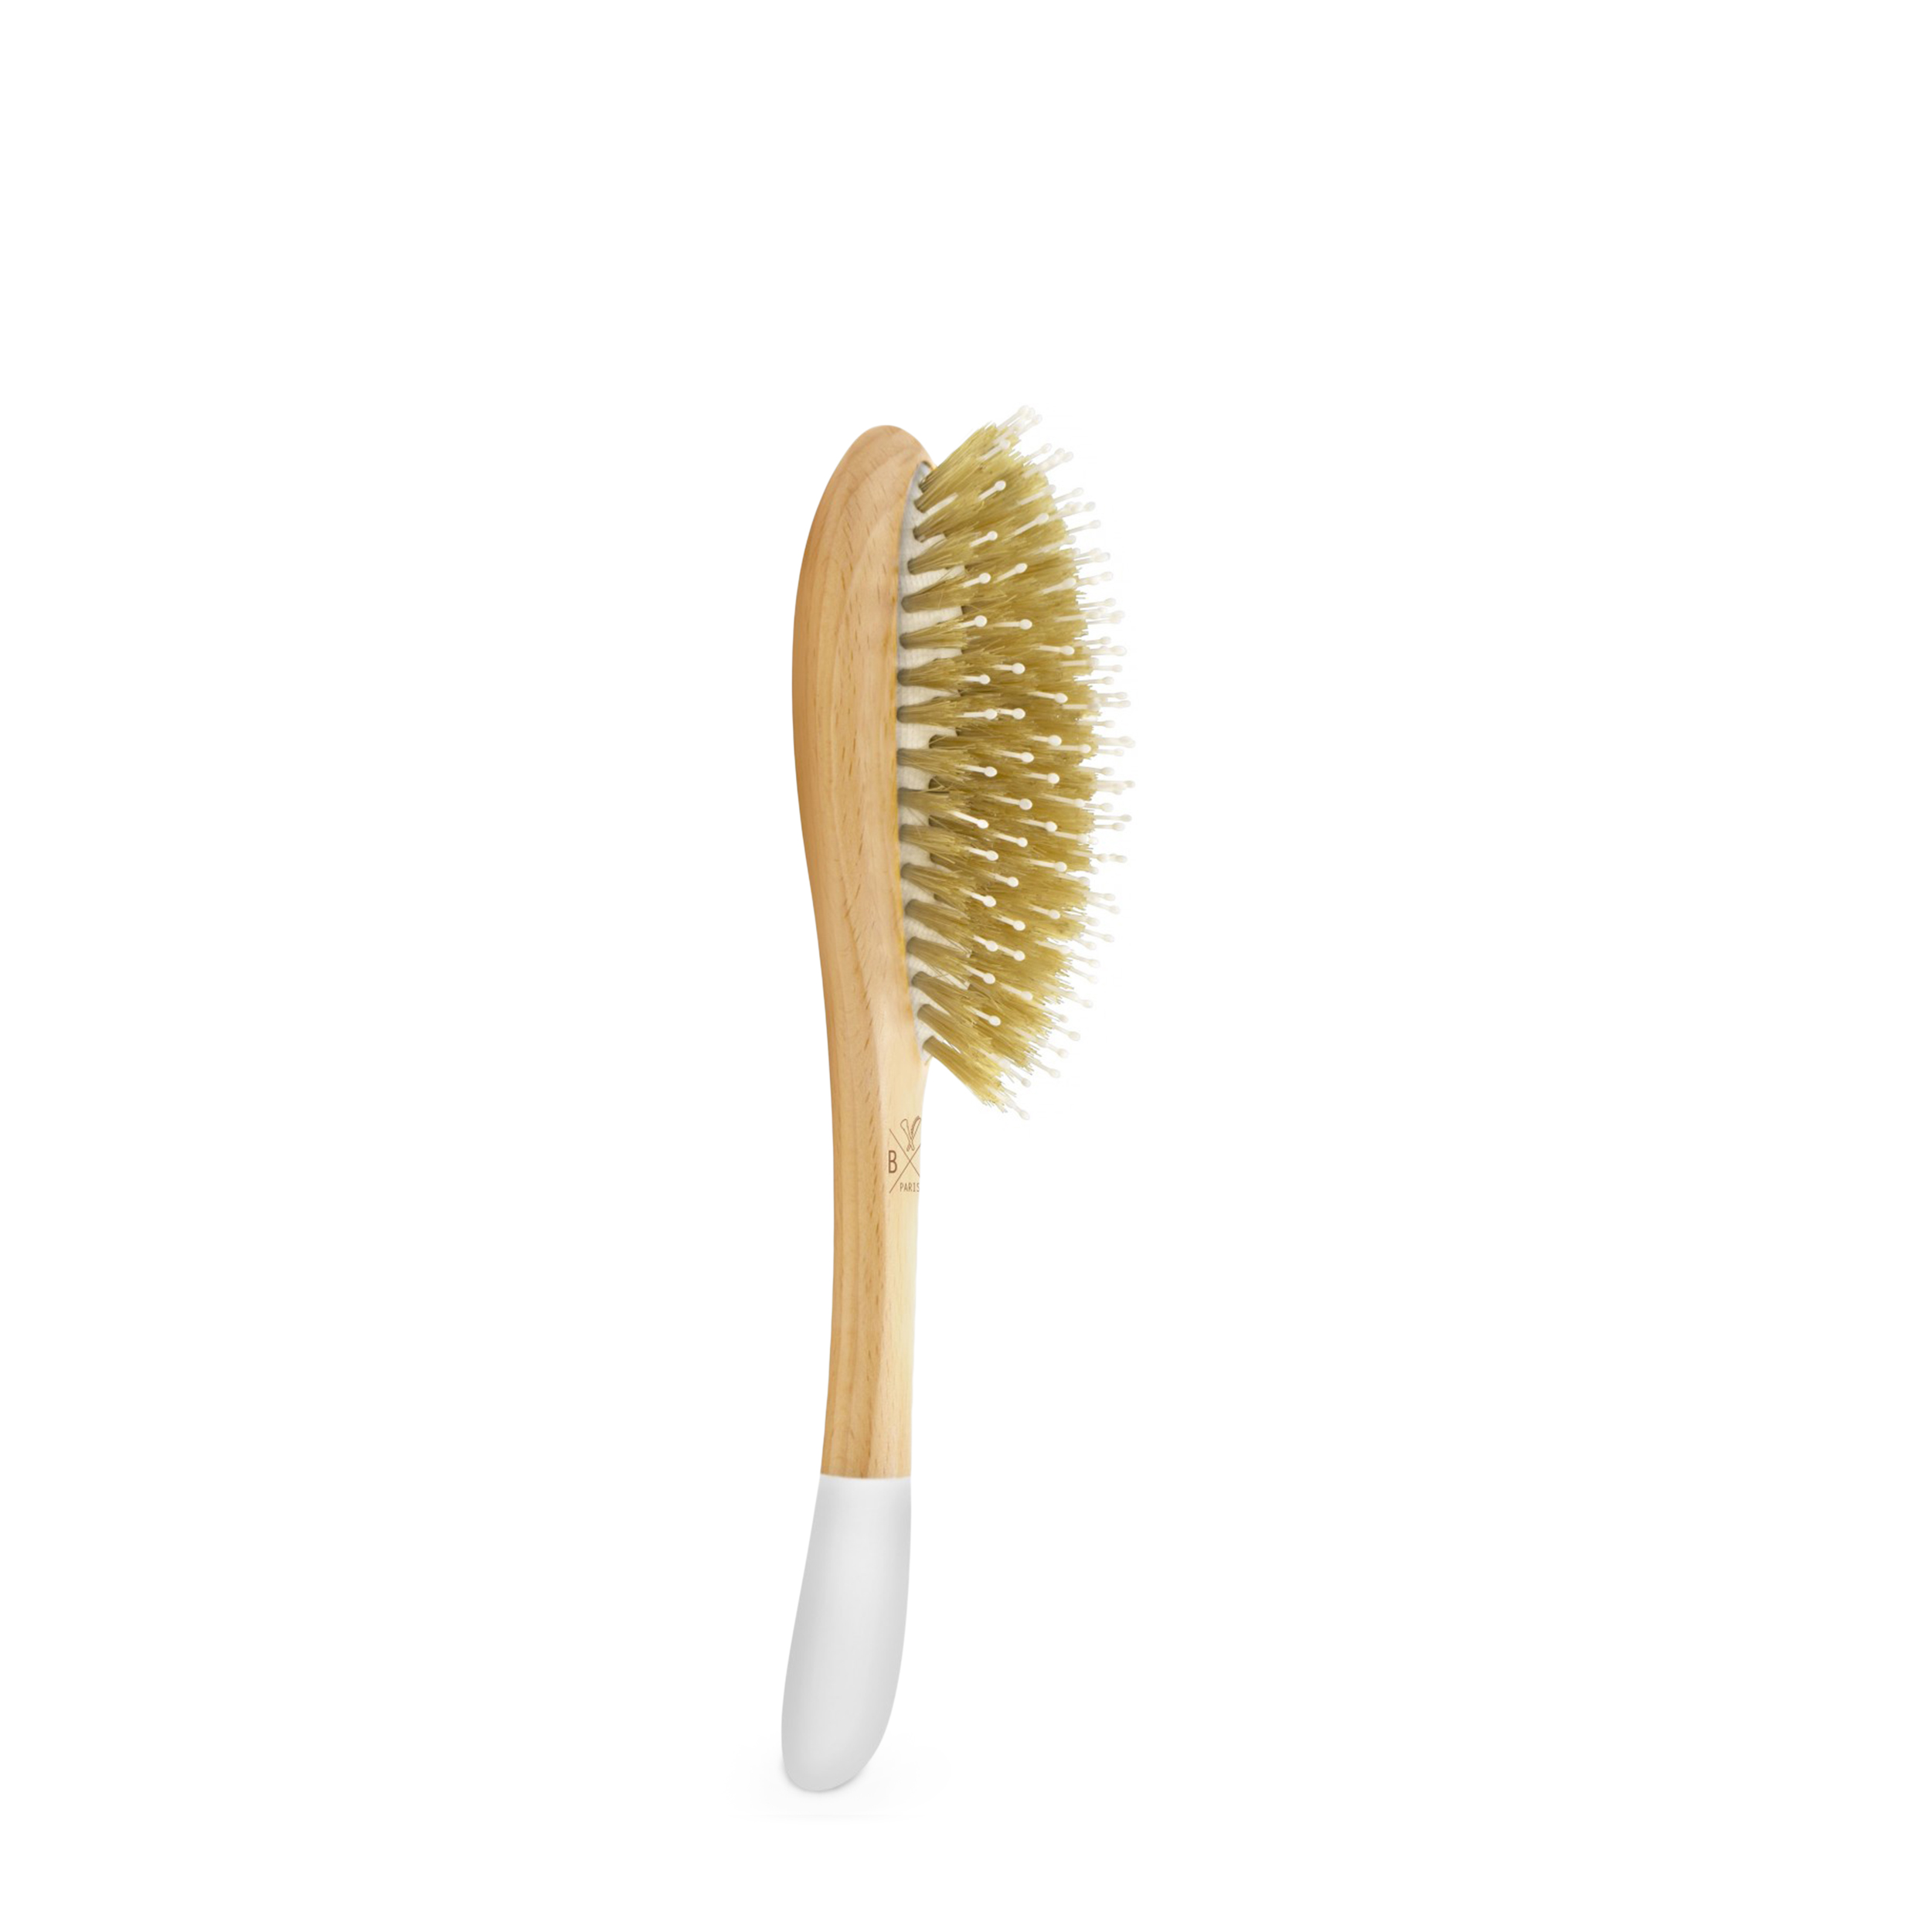 BACHCA BACHCA Расческа для распутывания и разглаживания волос Detangle & Smooth Hair Brush, размер Large 1 шт